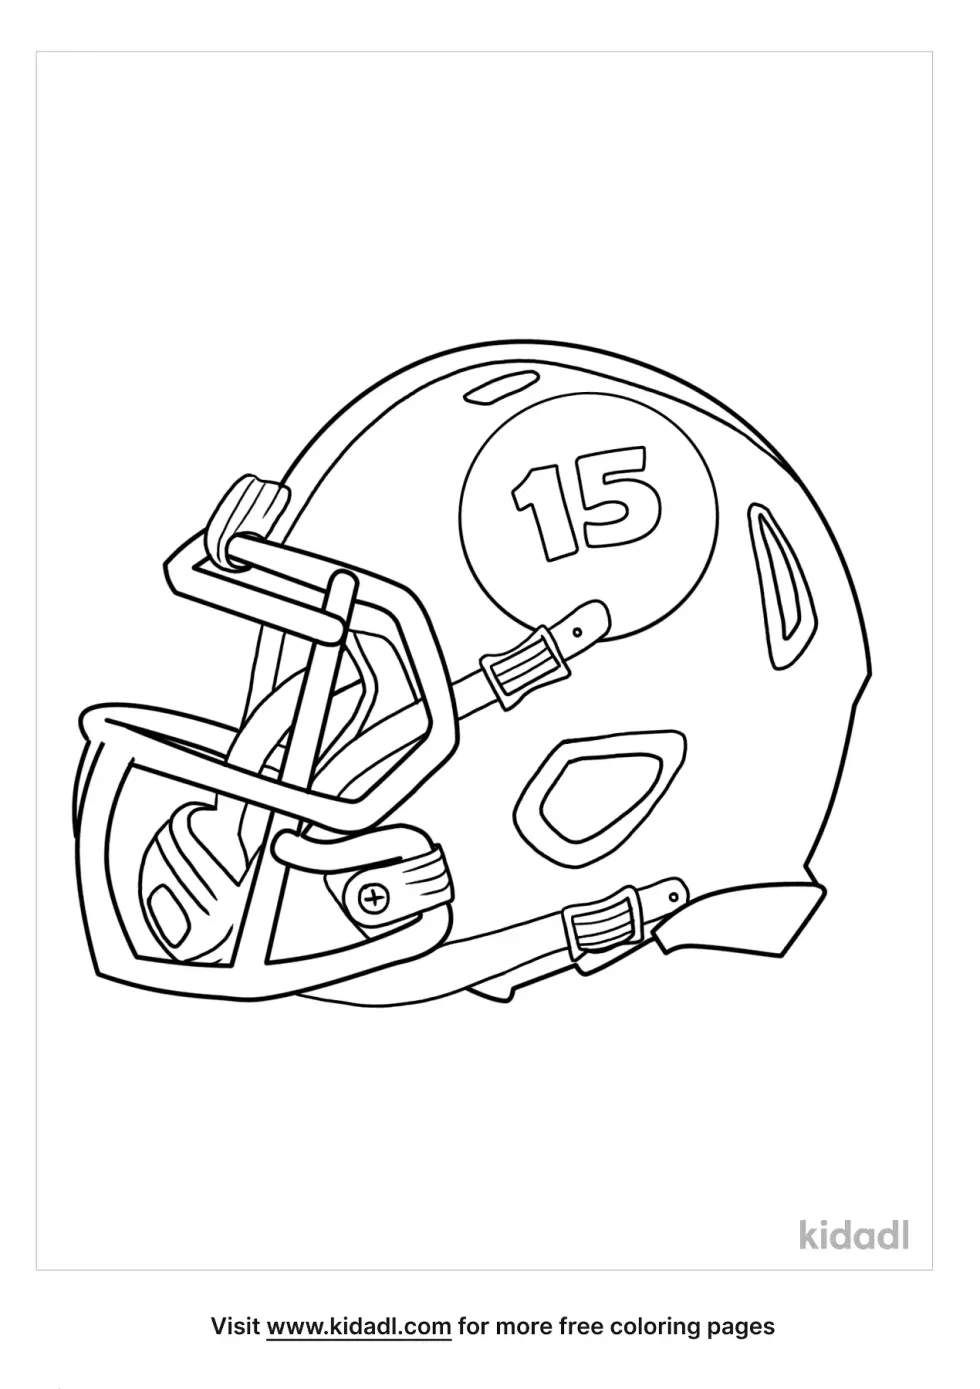 15 Football Helmet